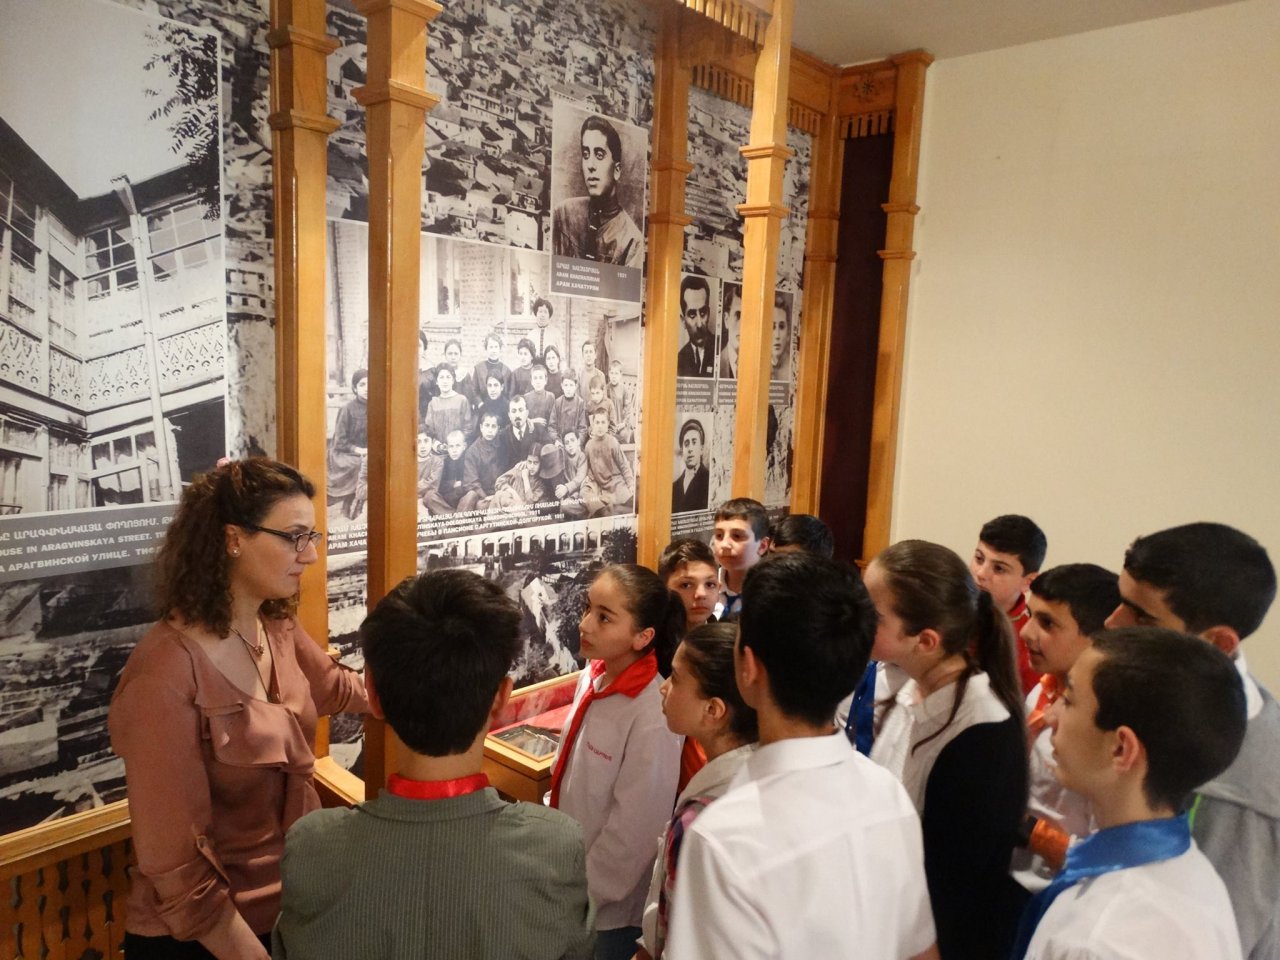 Արամ Խաչատրյանի տուն-թանգարանում «Հայ ասպետ»-ի սաները փայլեցին աշխարհահռչակ կոմպոզիտորի մասին ունեցած իրենց գիտելիքներով: